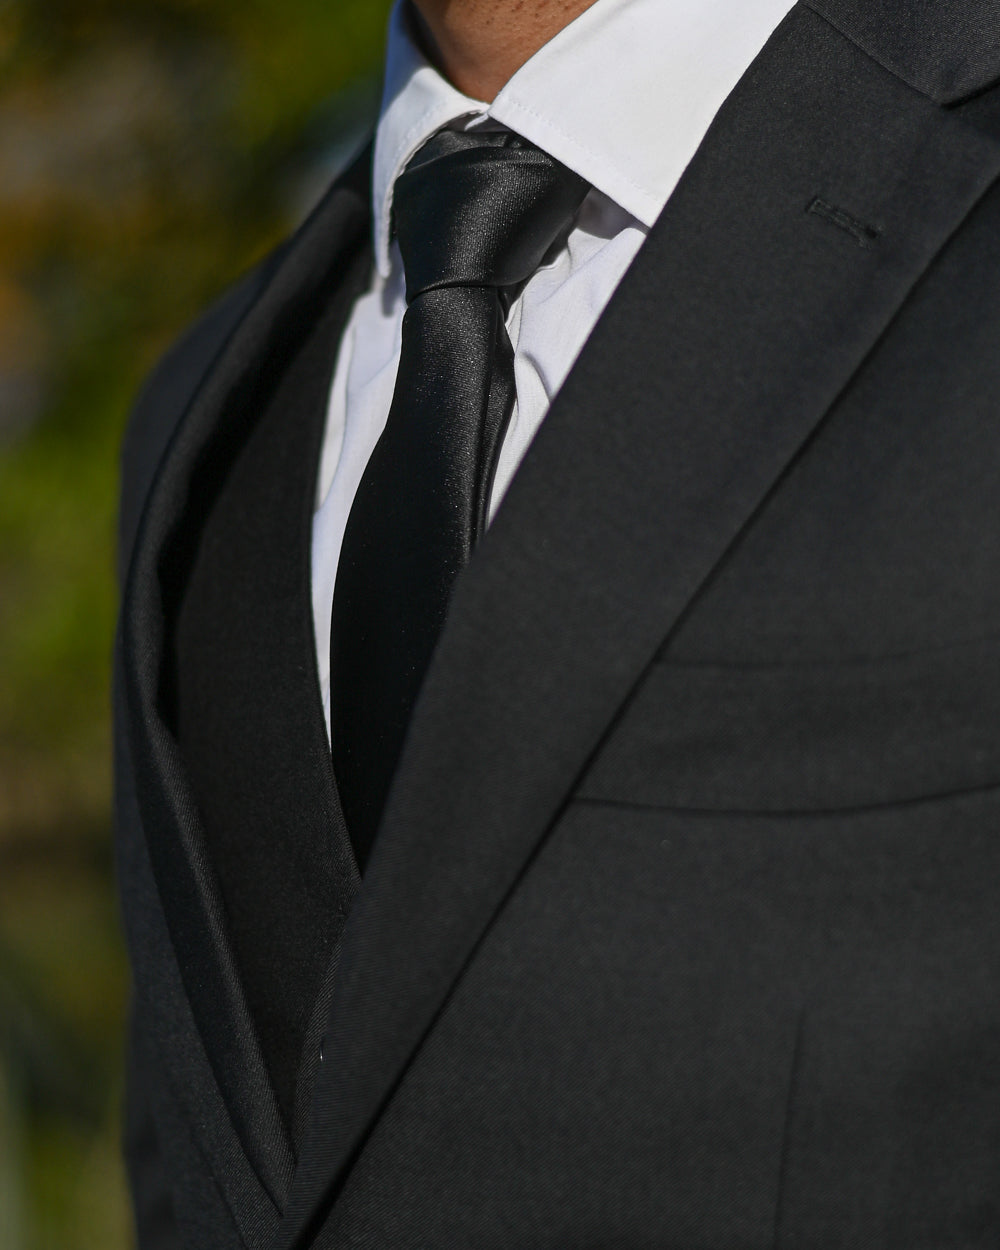 Black silk-look tie worn with black suit